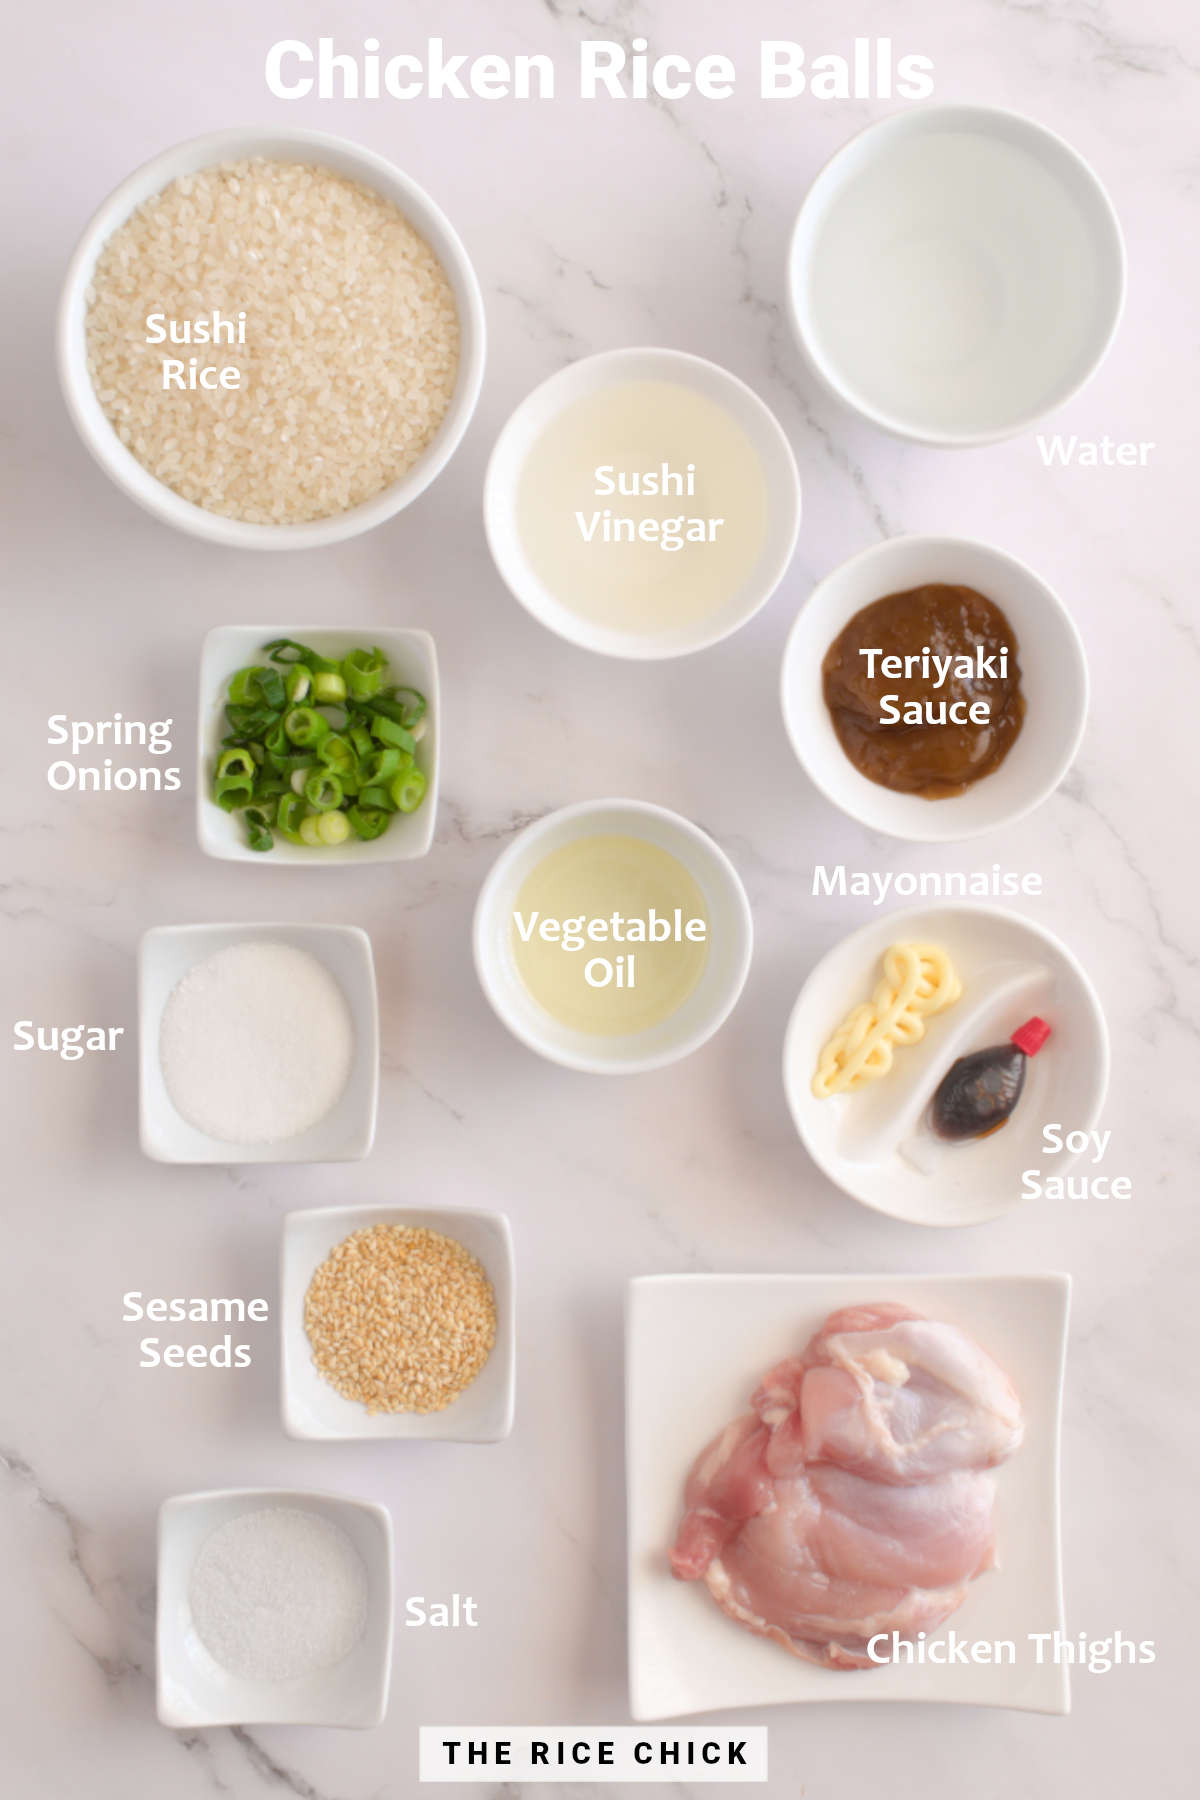 Chicken rice ball ingredients.